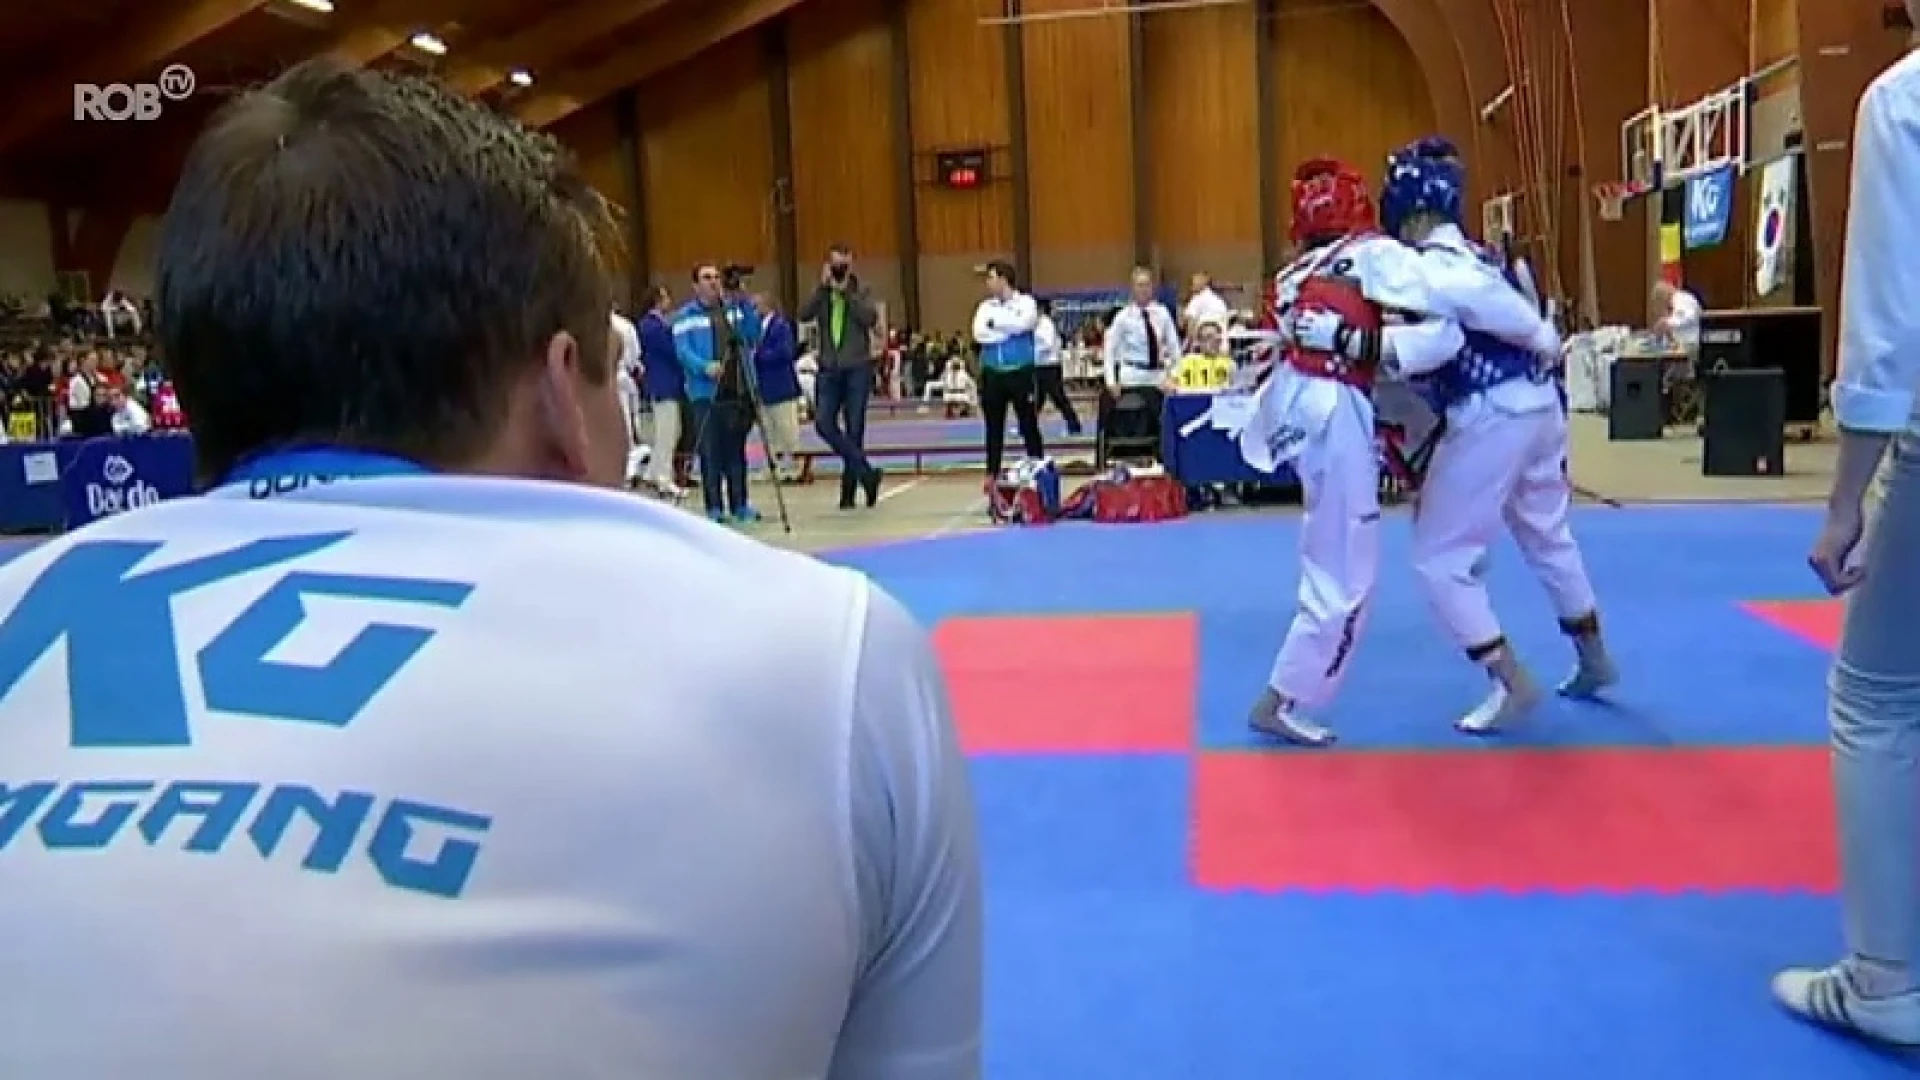 Taekwondotornooi in Diest lokt atleten uit alle uithoeken van de wereld